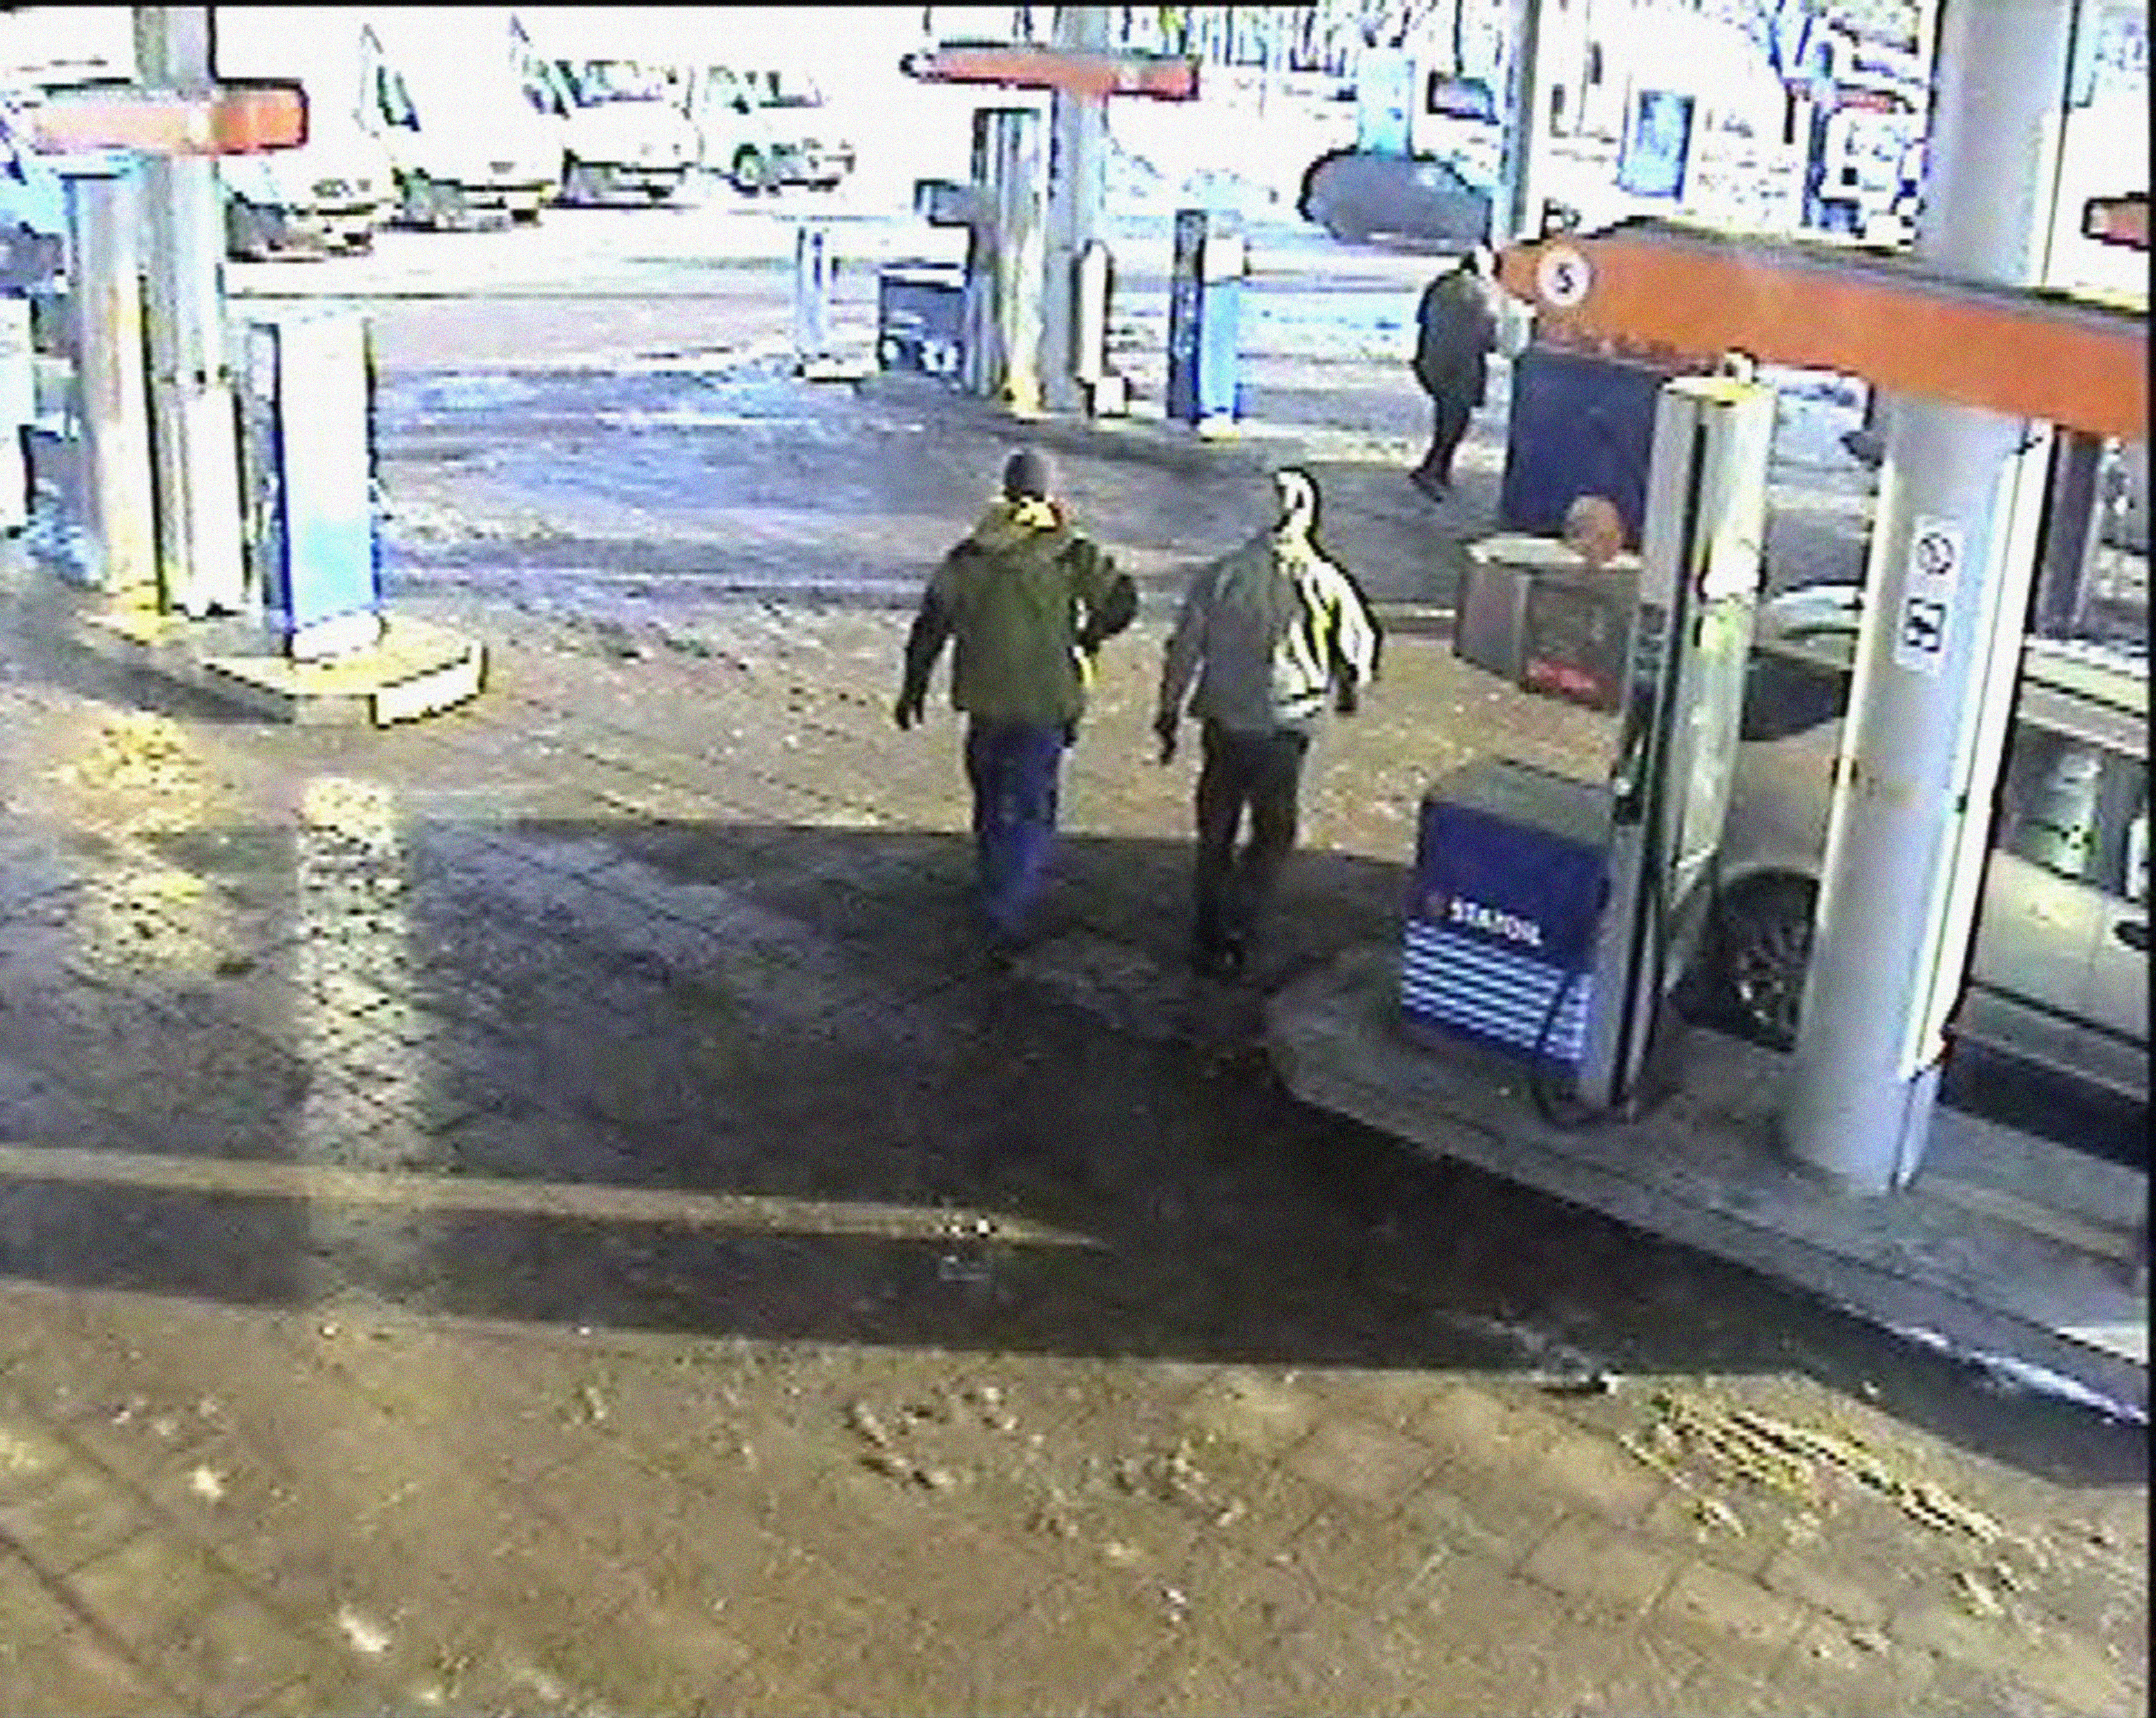 Övervakningskamera vid bensinmack. Bilden har ingenting med artikeln att göra.